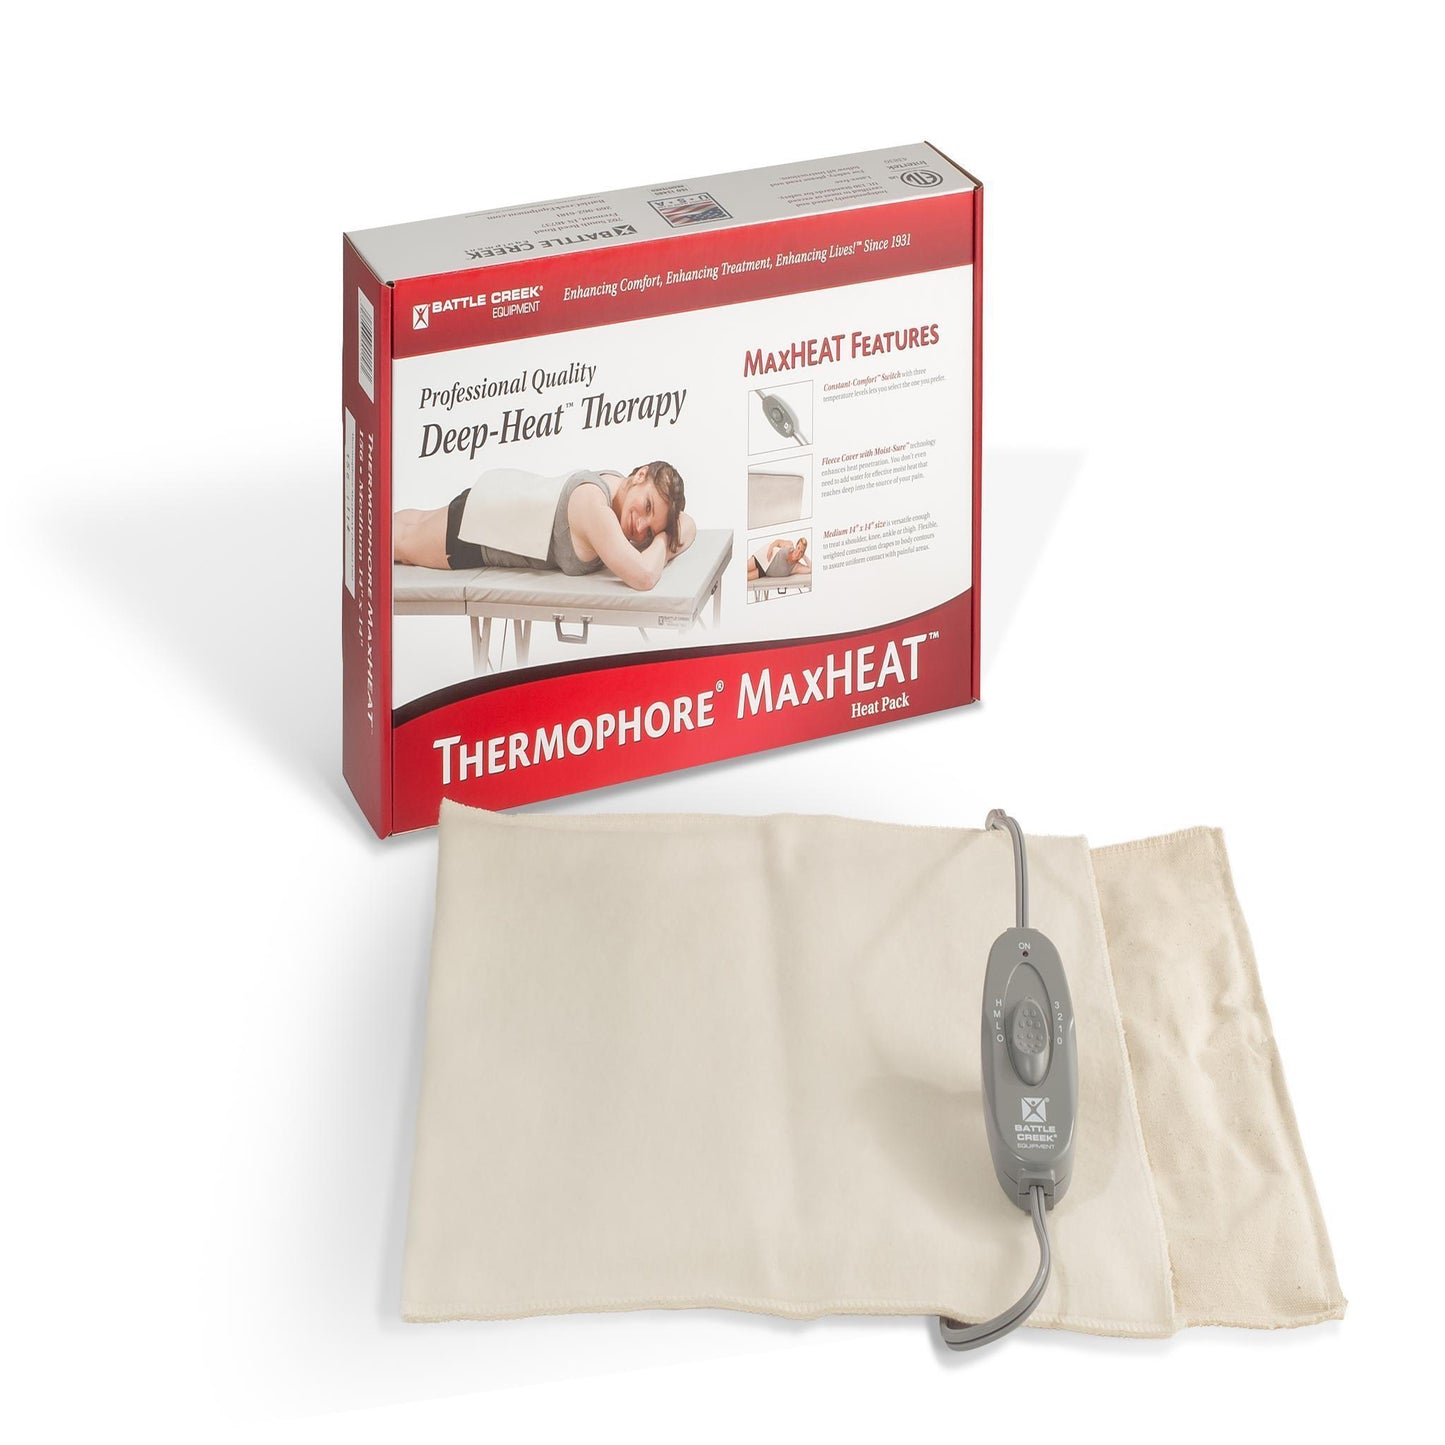 Thermophore MaxHEAT Moist Heat Pack